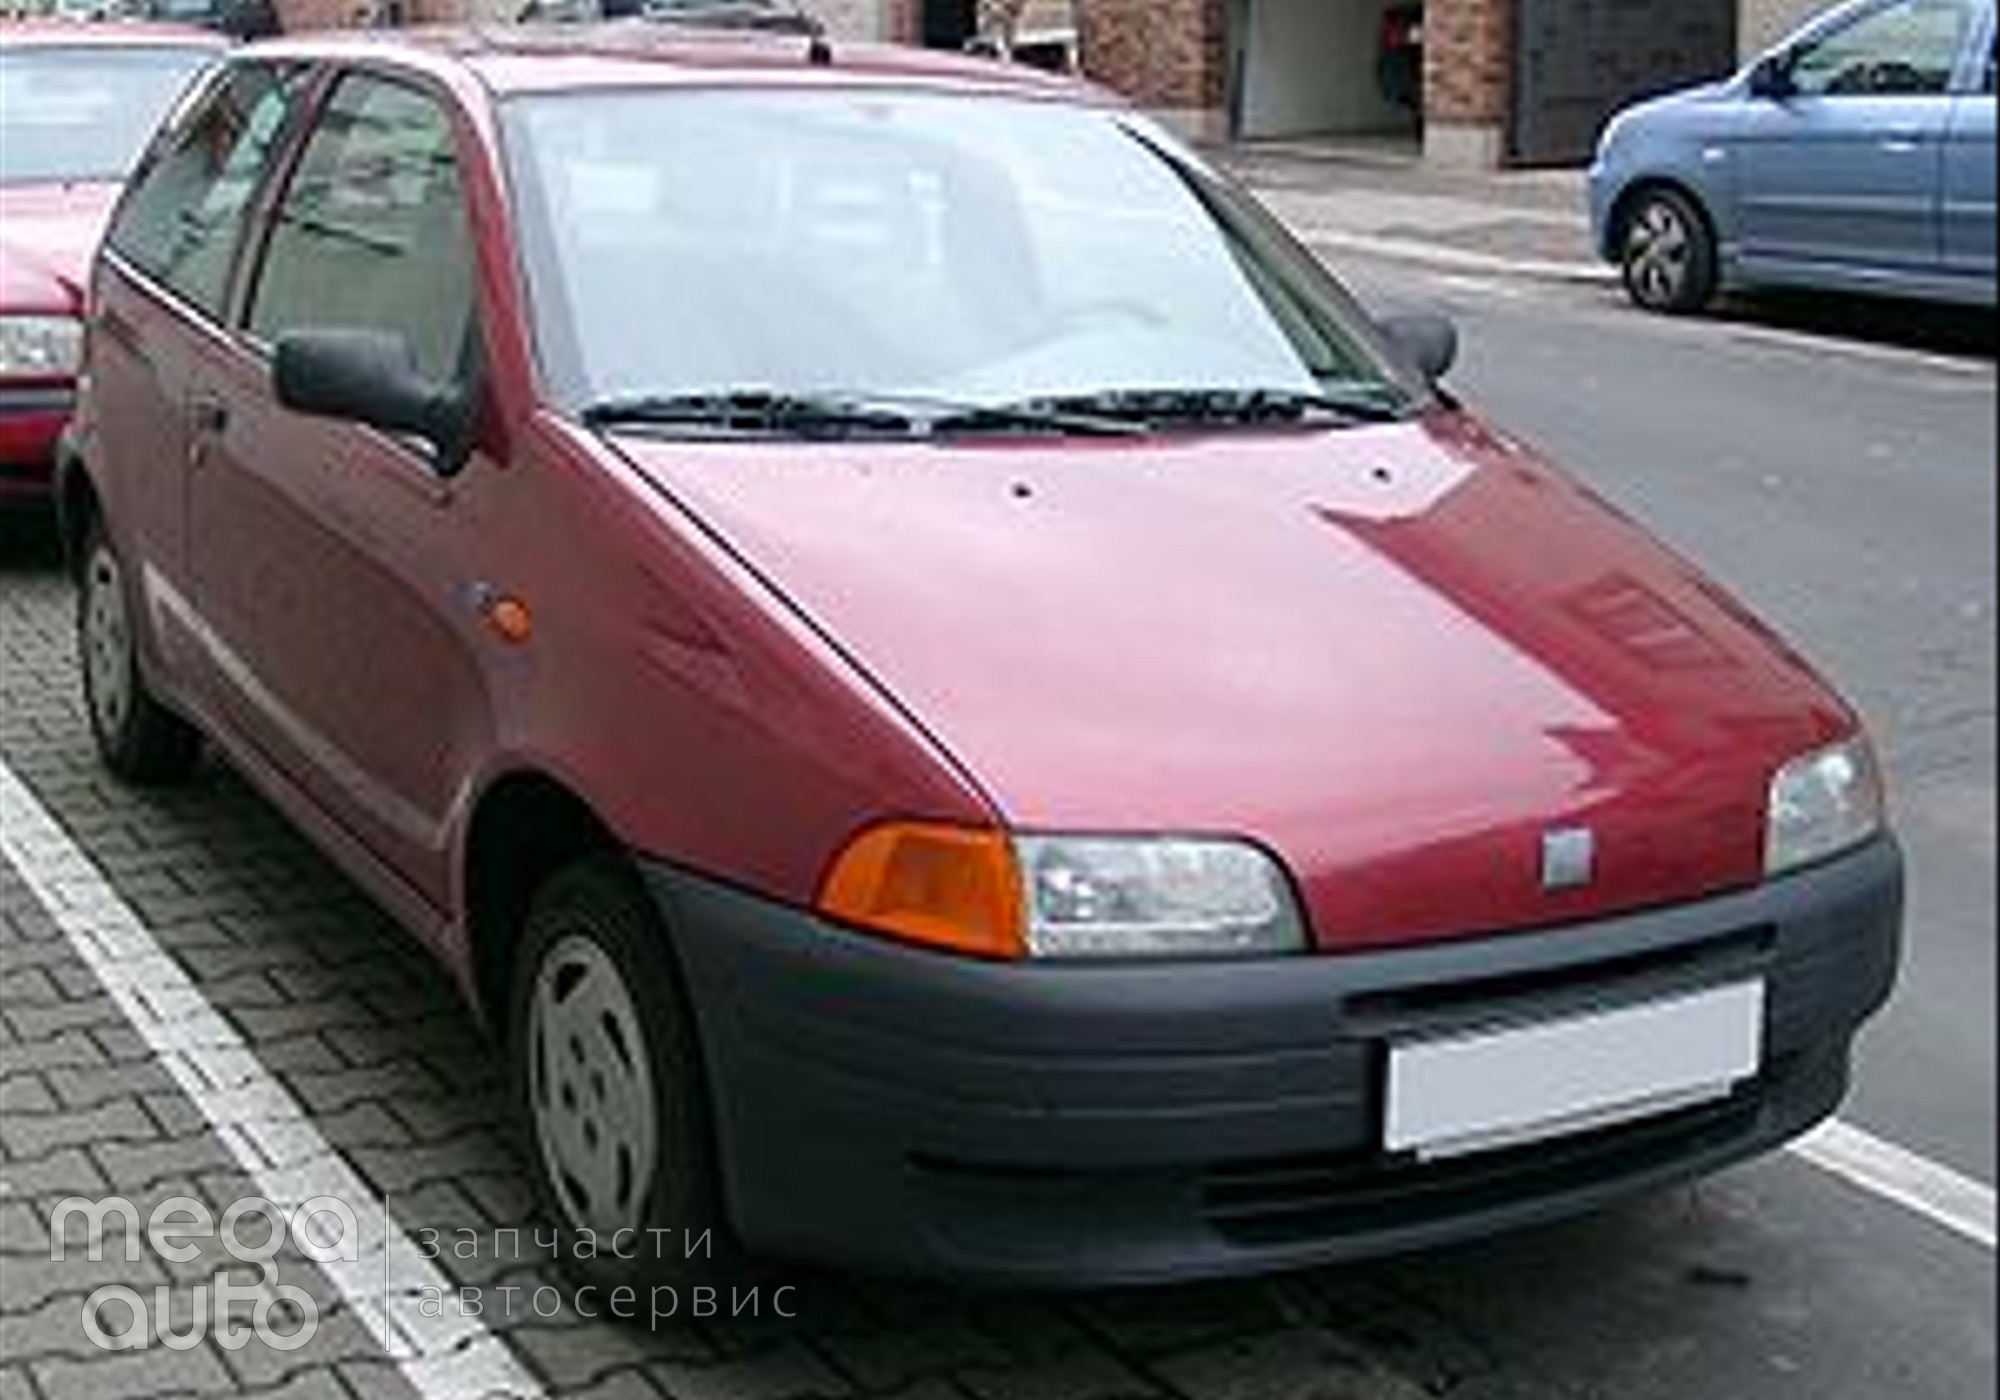 Fiat Punto I 1996 г. в разборе